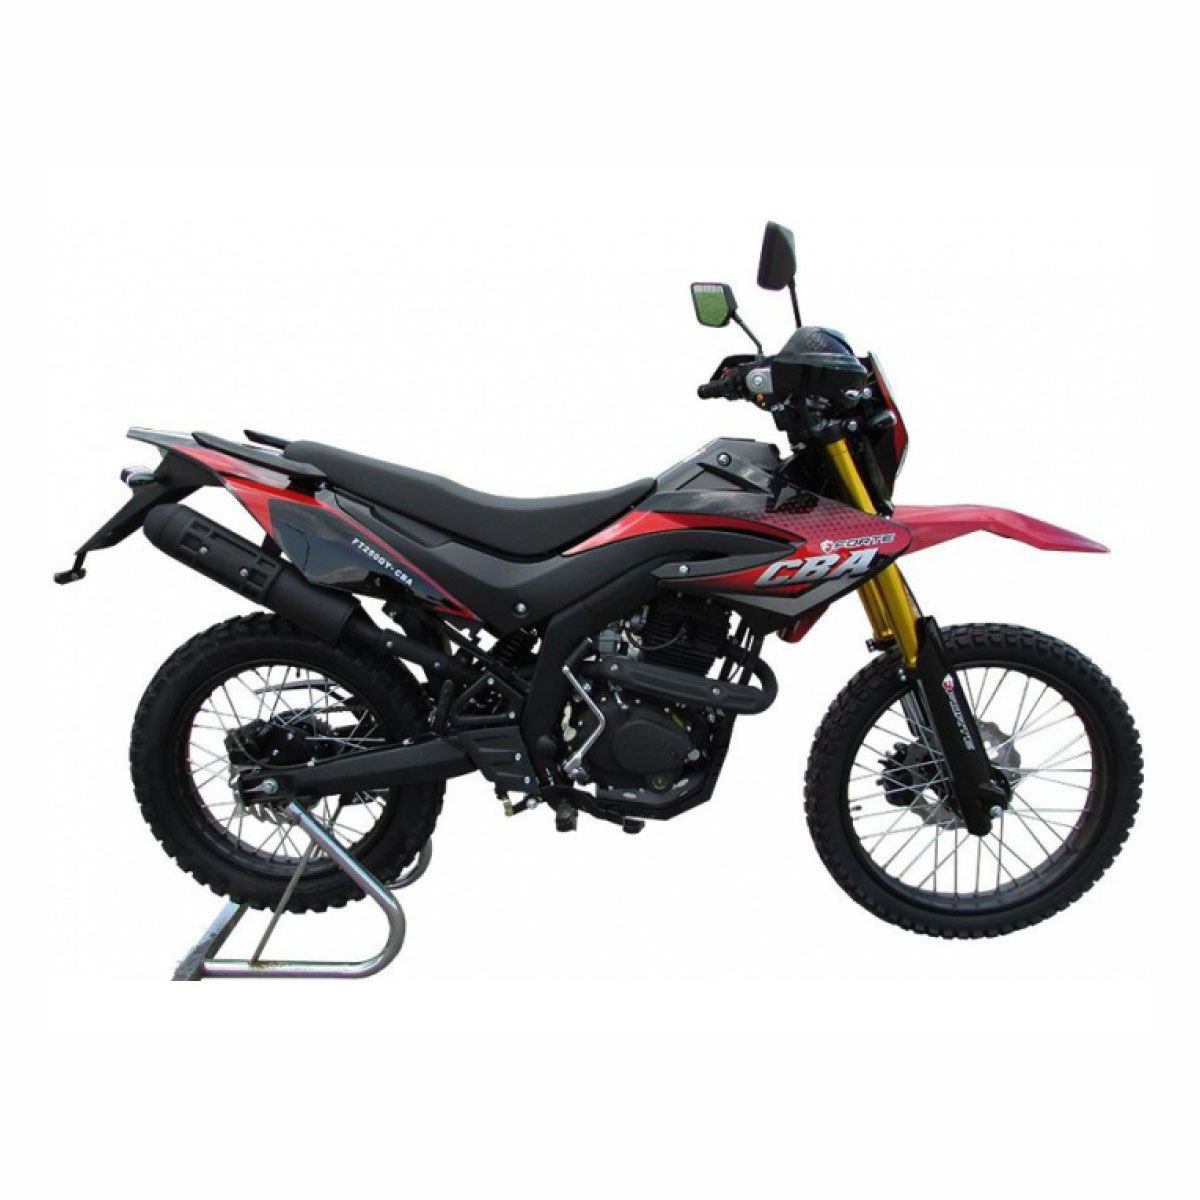 Мотоцикл FT250GY-CBA Forte красно-черный